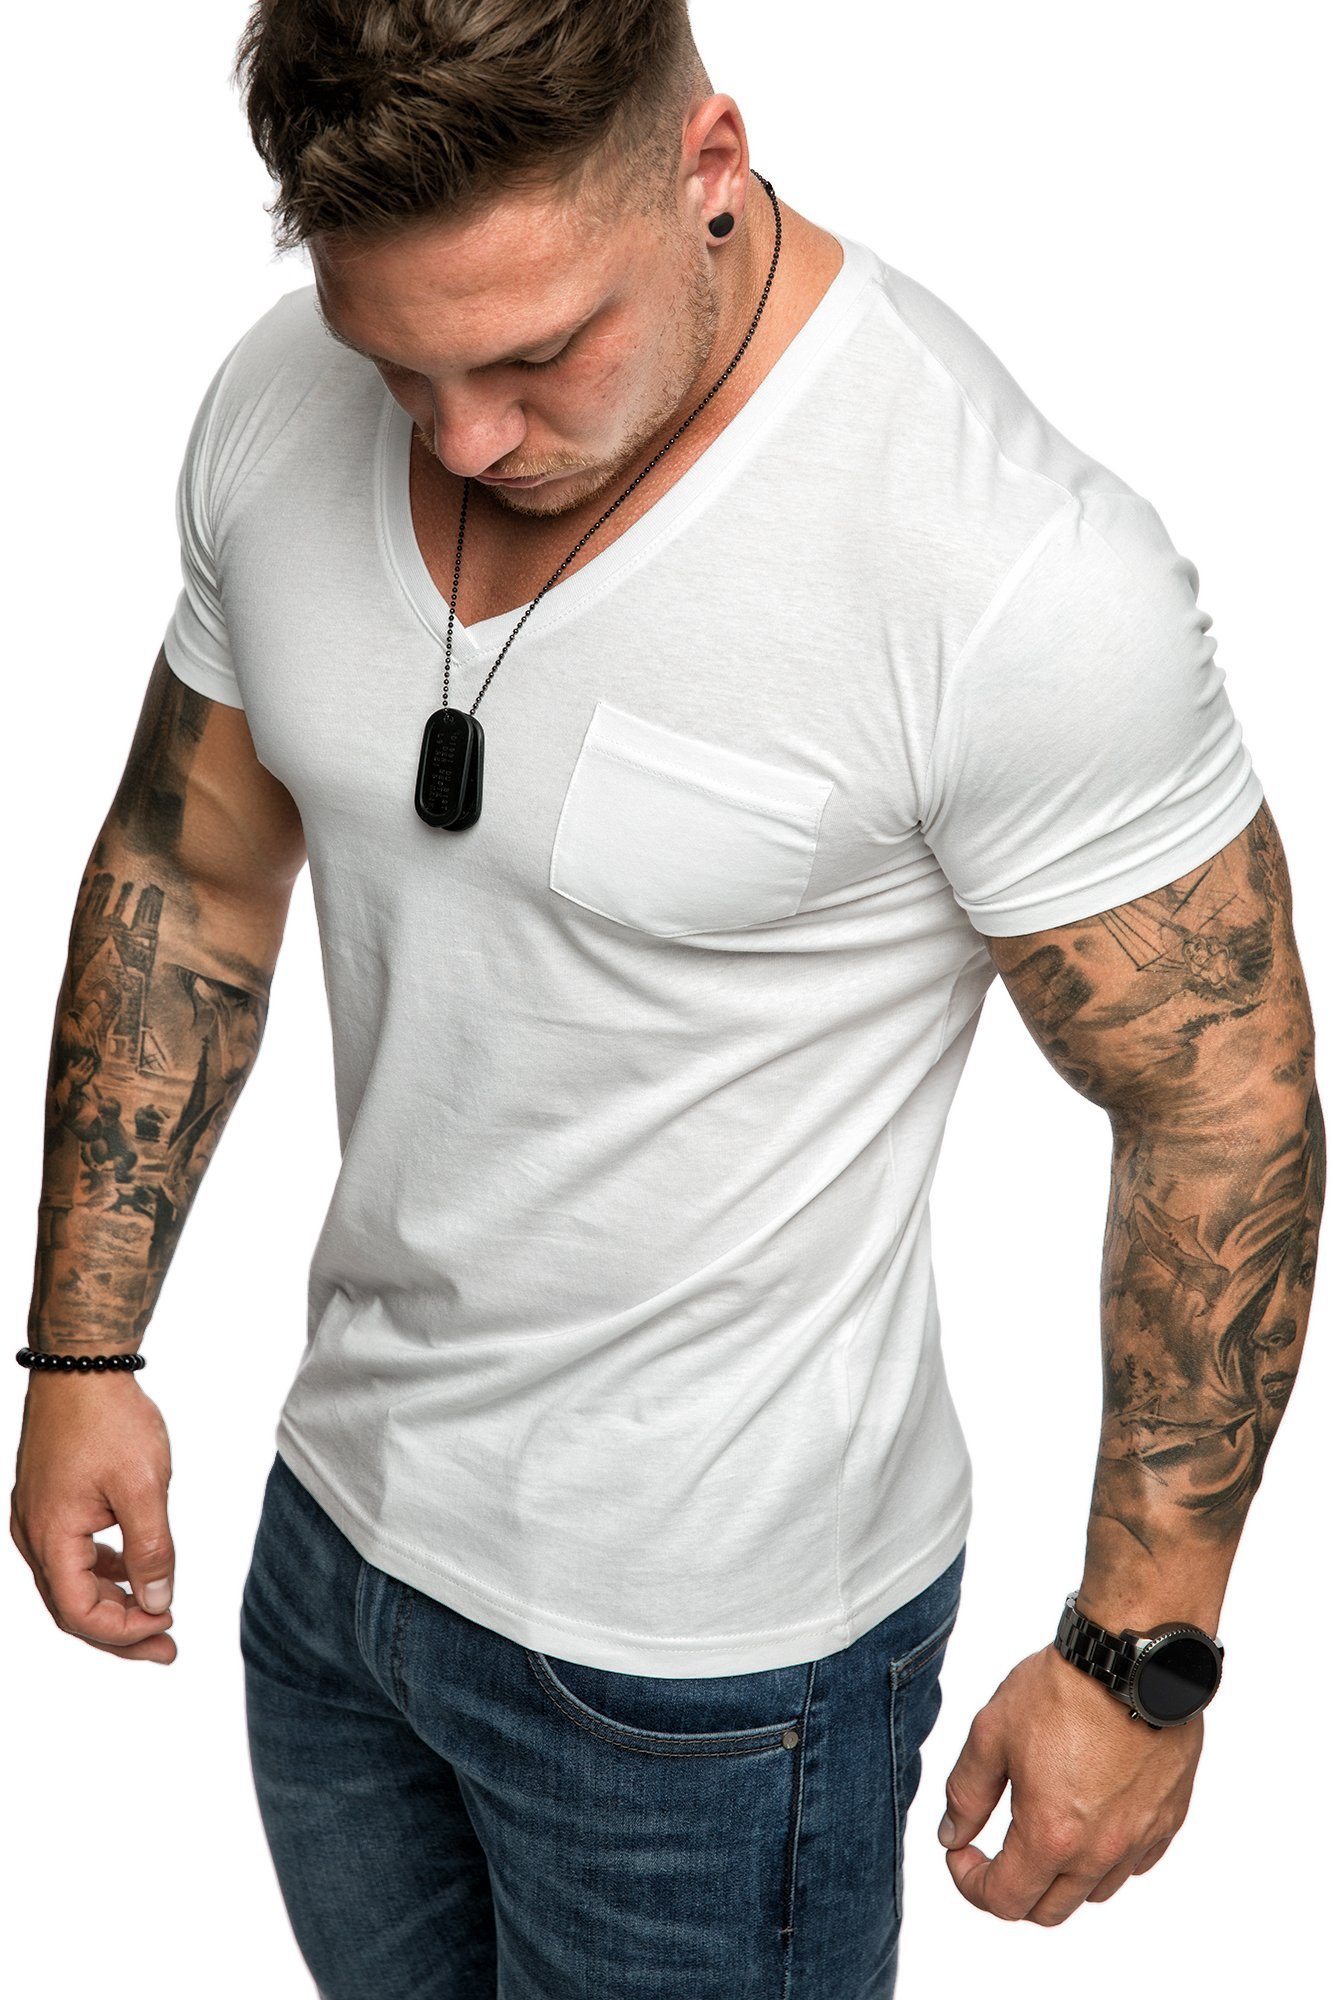 Brusttasche V-Ausschnitt PATERSON mit Herren mit Basic T-Shirt Oversize Vintage Weiß V-Ausschnitt Basic und T-Shirt Shirt Amaci&Sons